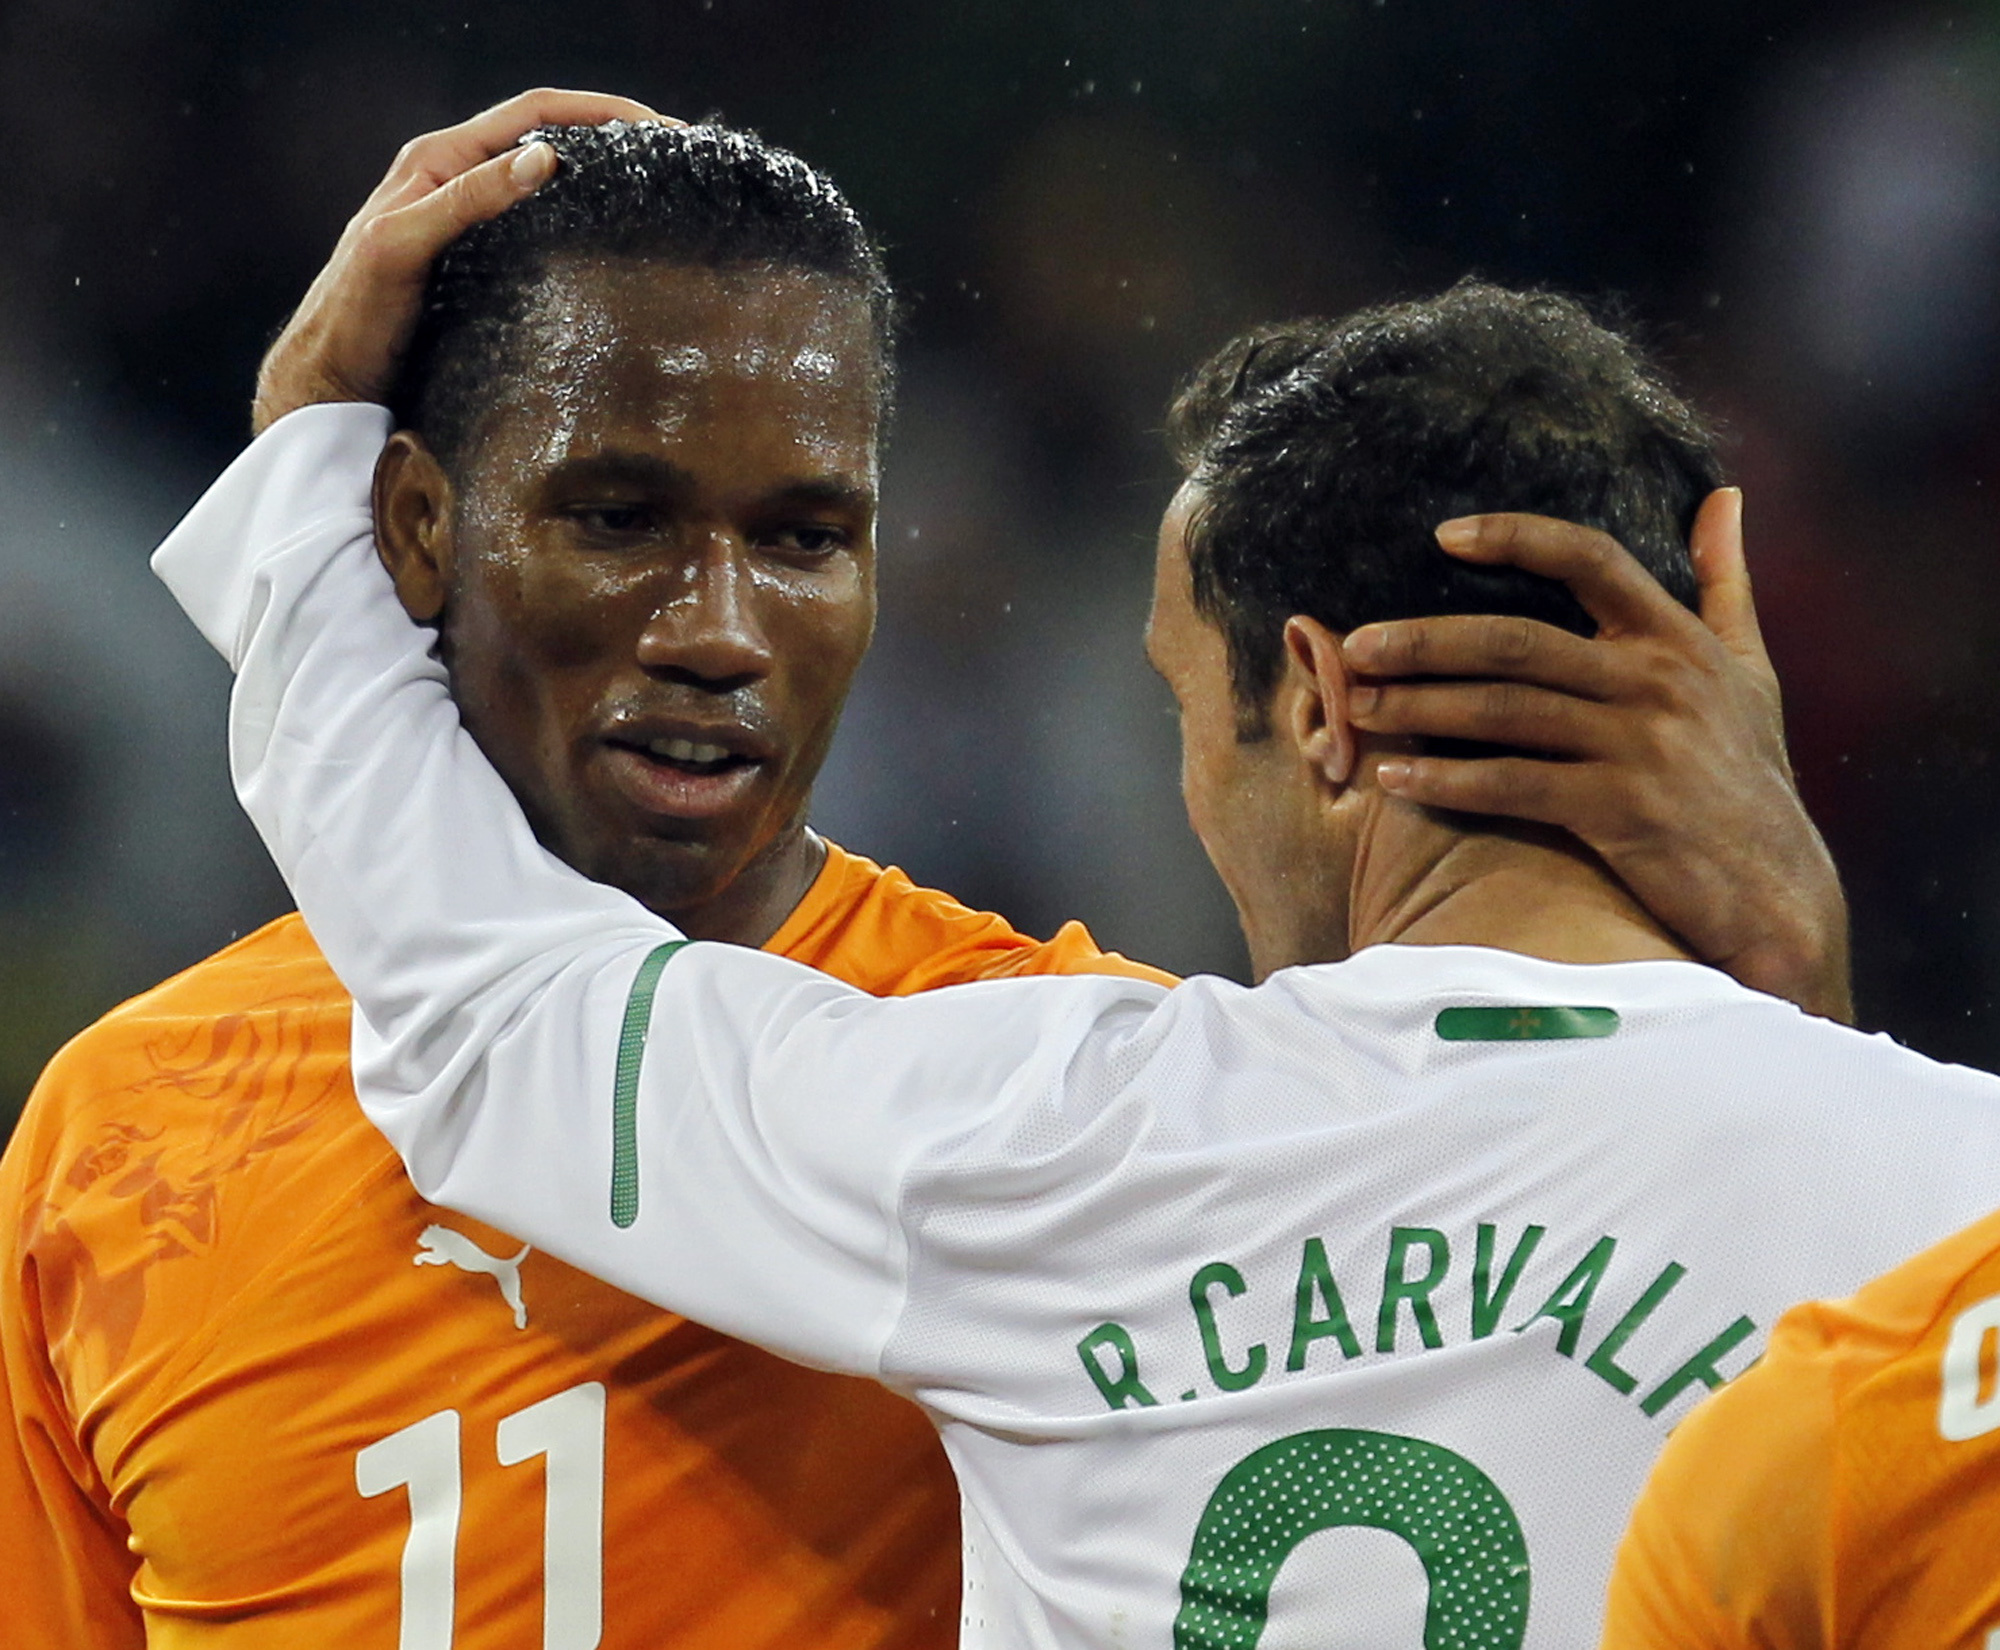 Chelseaspelarna Drogba (t.v)) och Carvalho (t.h) hann med en vänskaplig kram.